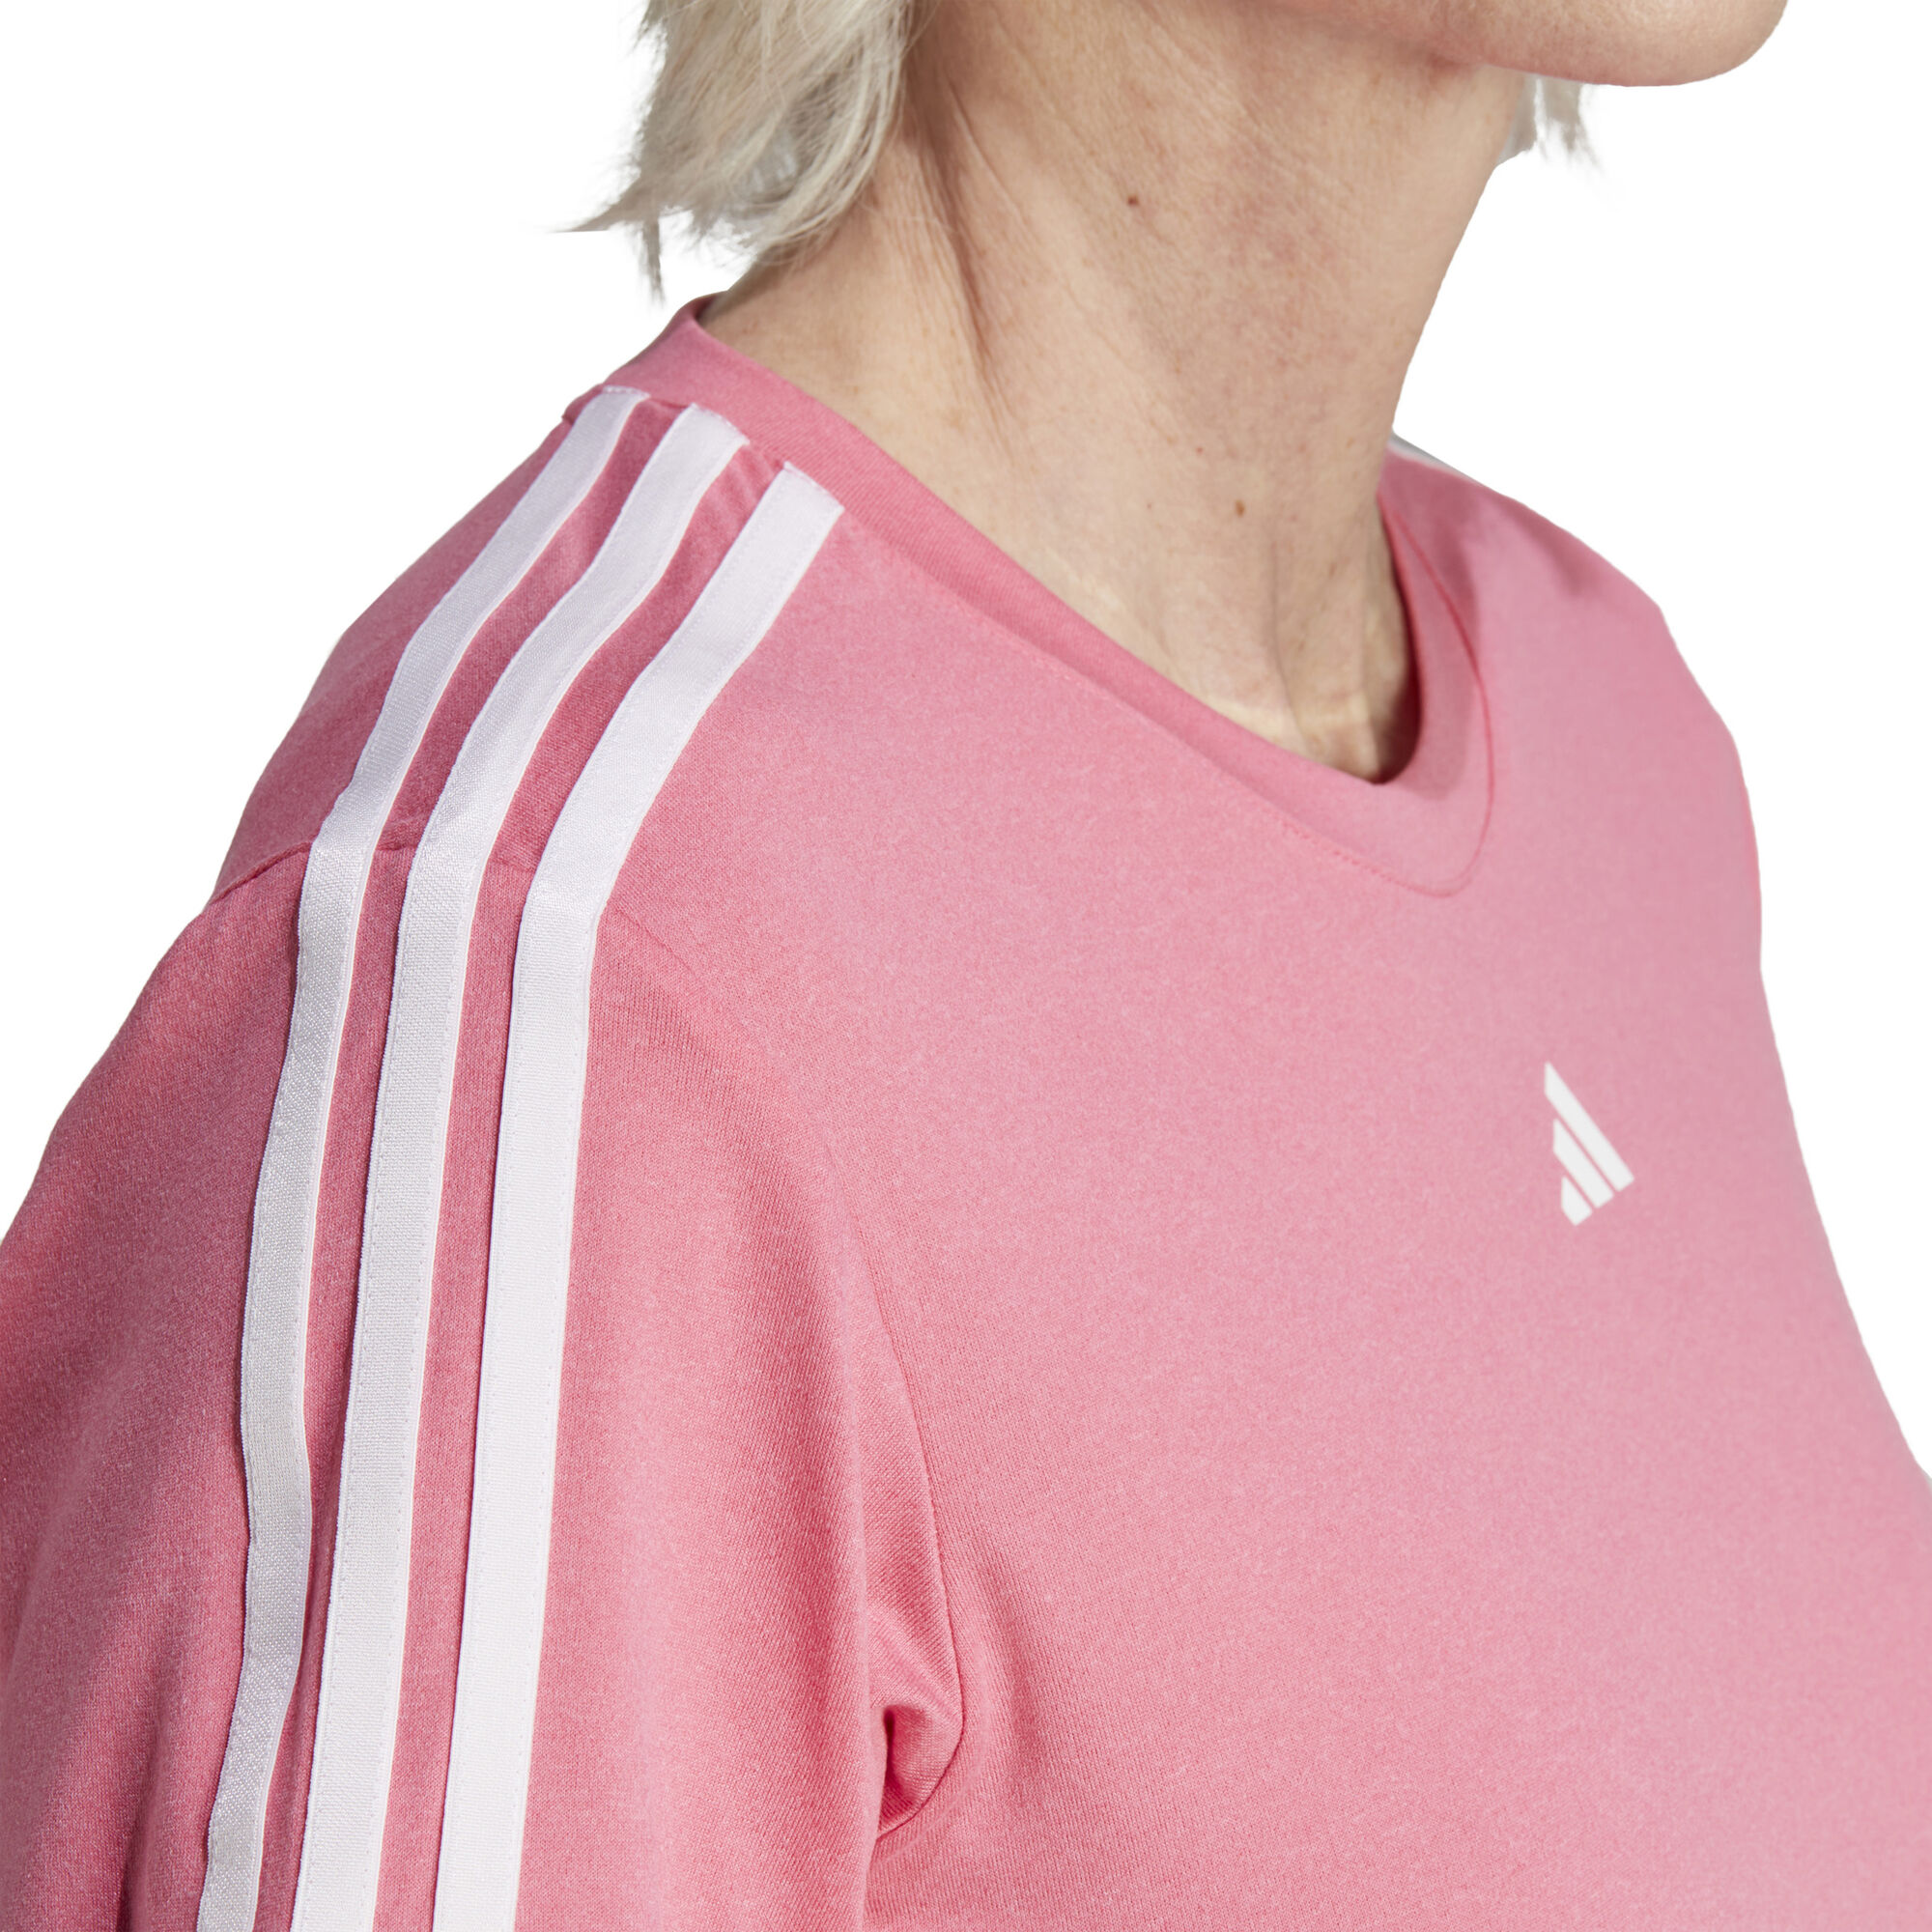 adidas Training Essential 3 Stripes T-Shirt Damen Pink, Weiß online kaufen  | Tennis Point DE